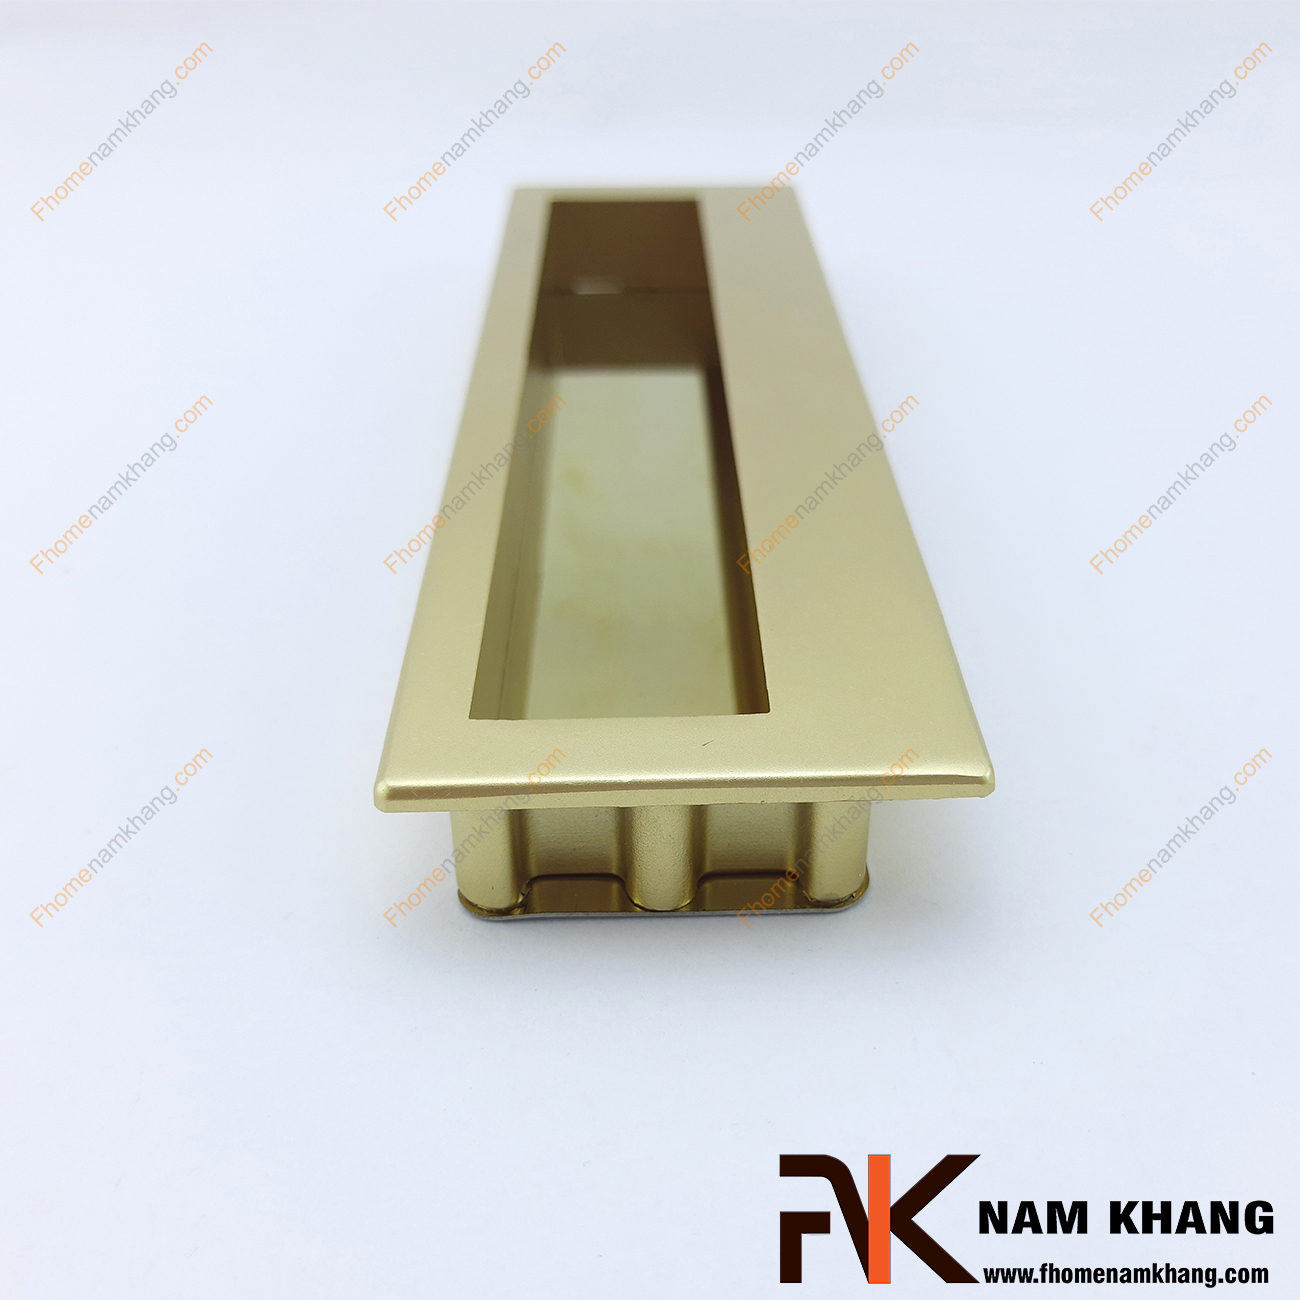 Tay nắm âm tủ màu vàng mờ NK431-VM là loại tay nắm chuyên dùng cho các loại tủ đặt ở những nơi có không gian hạn chế hoặc dùng để nâng cao tính thẫm mỹ của sản phẩm. 